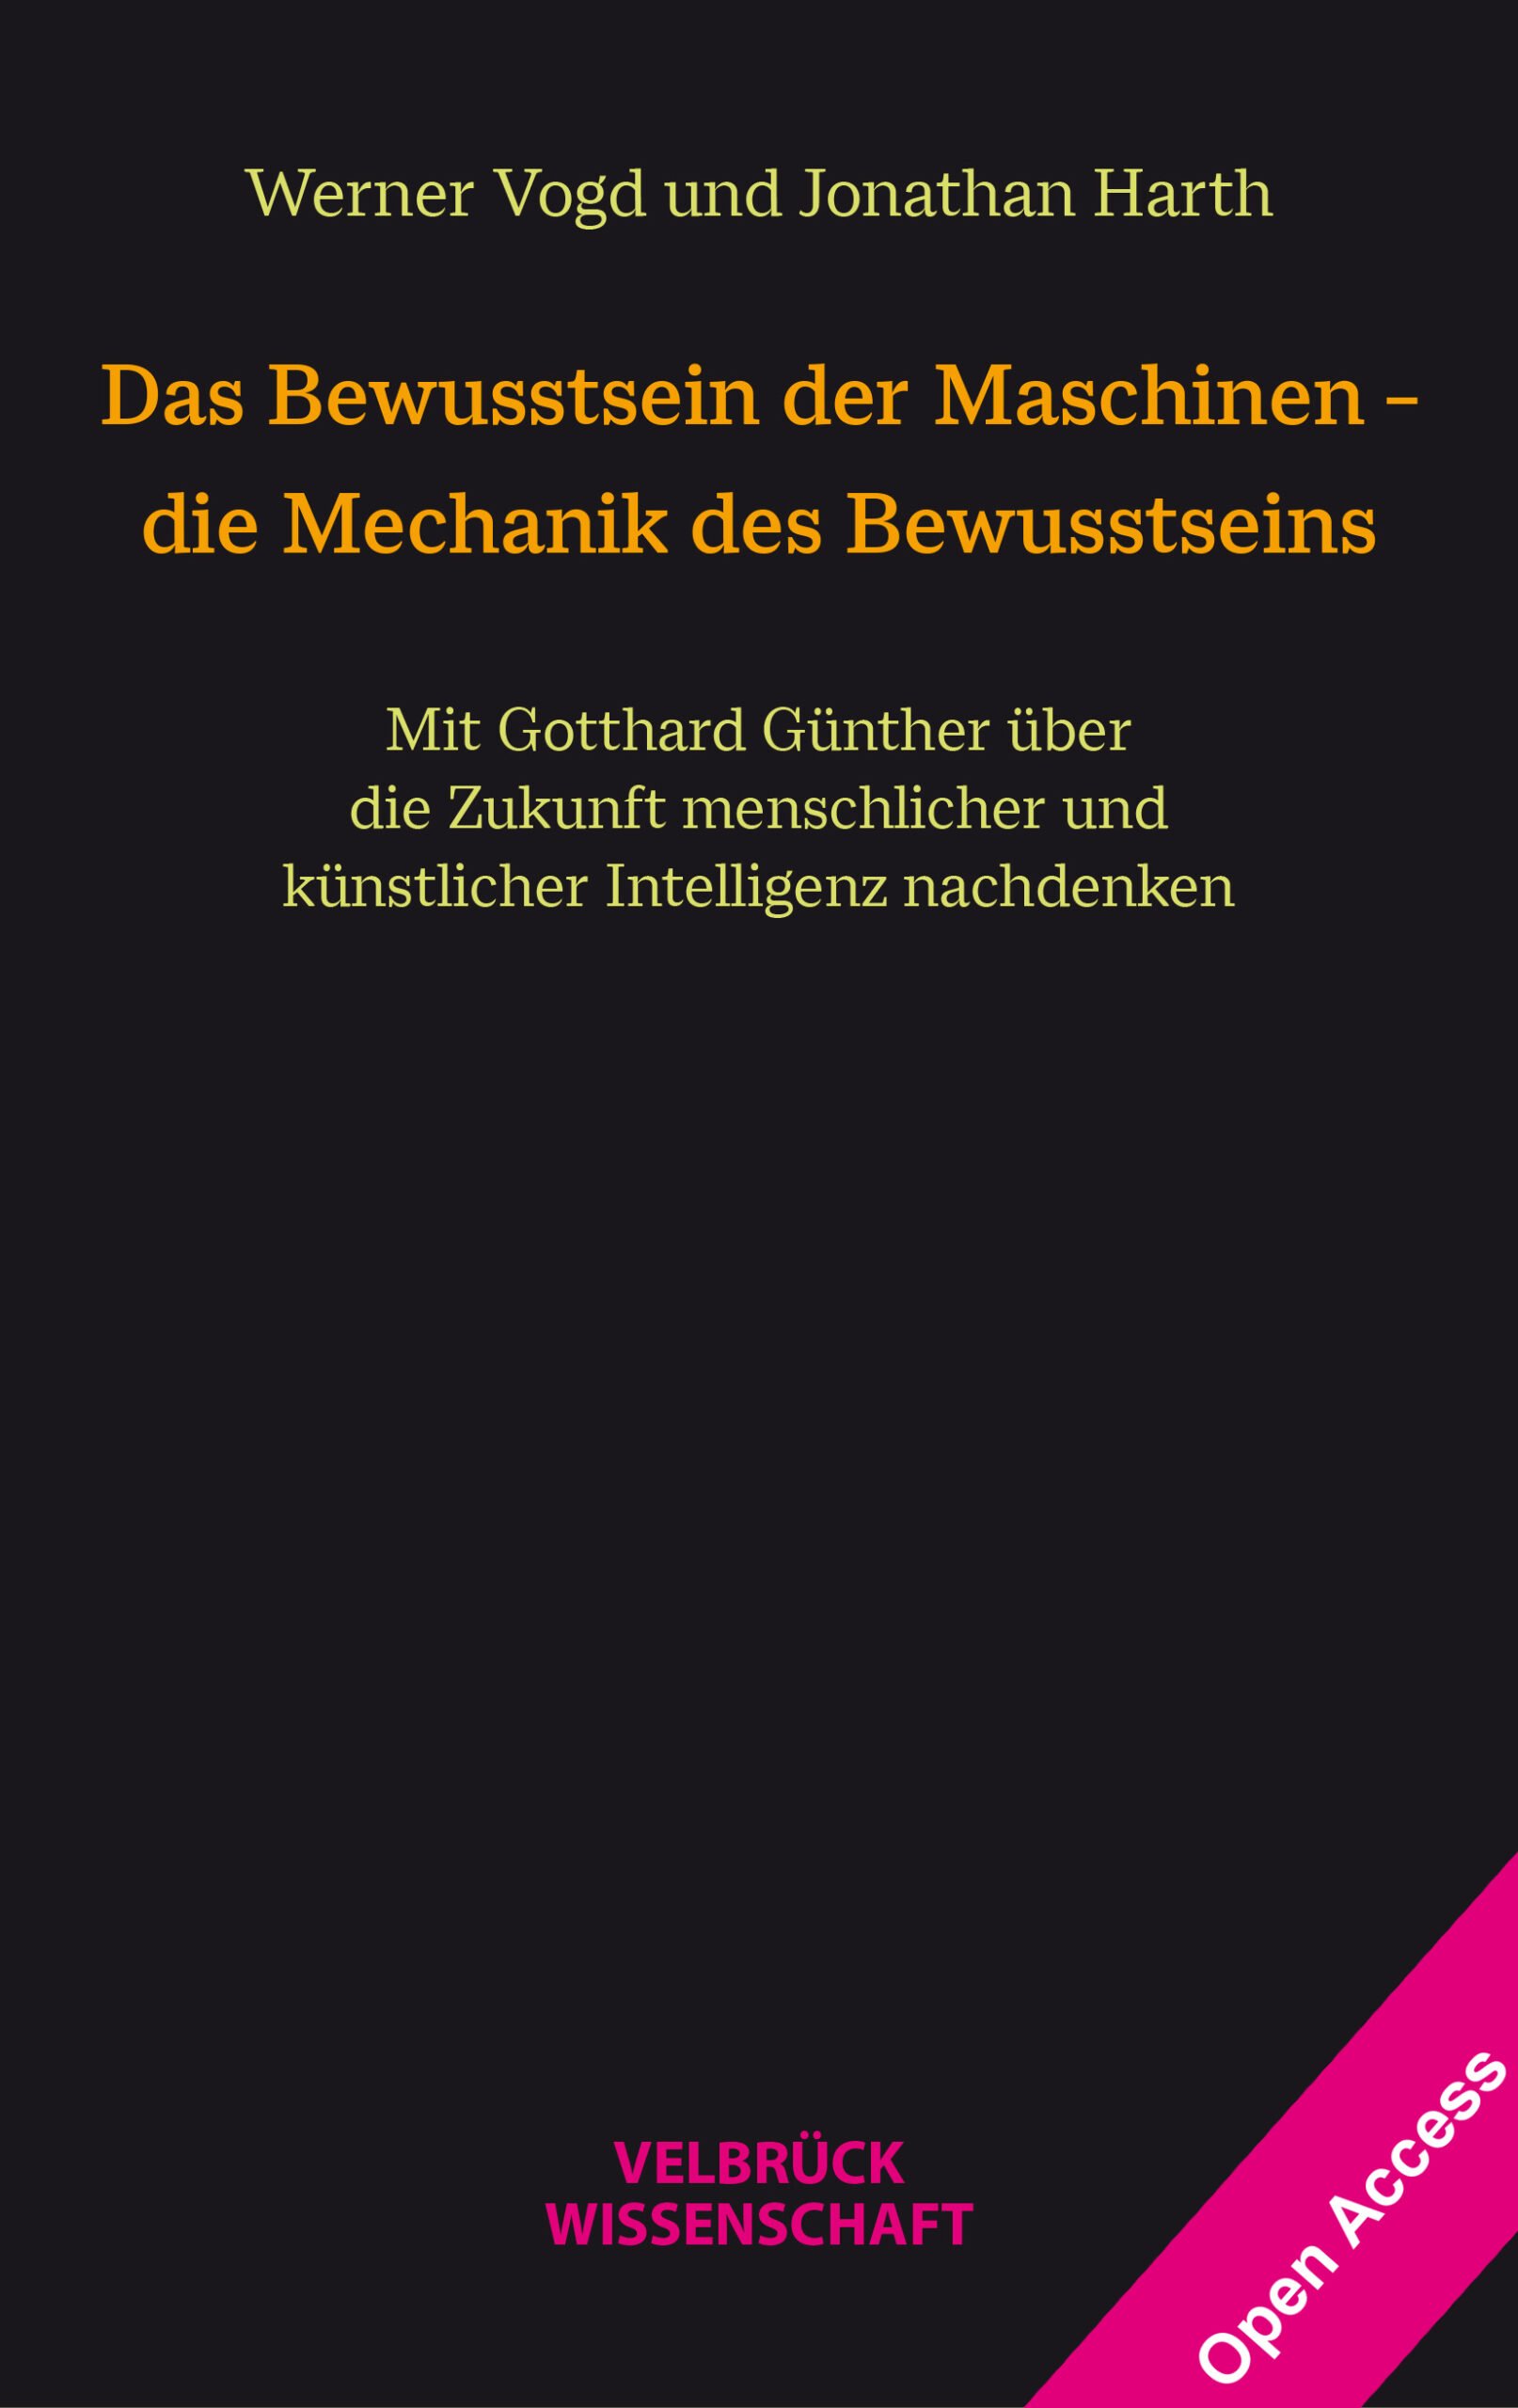 Buchcover: Das Bewusstsein der Maschinen von Werner Vogd und Jonathan Harth